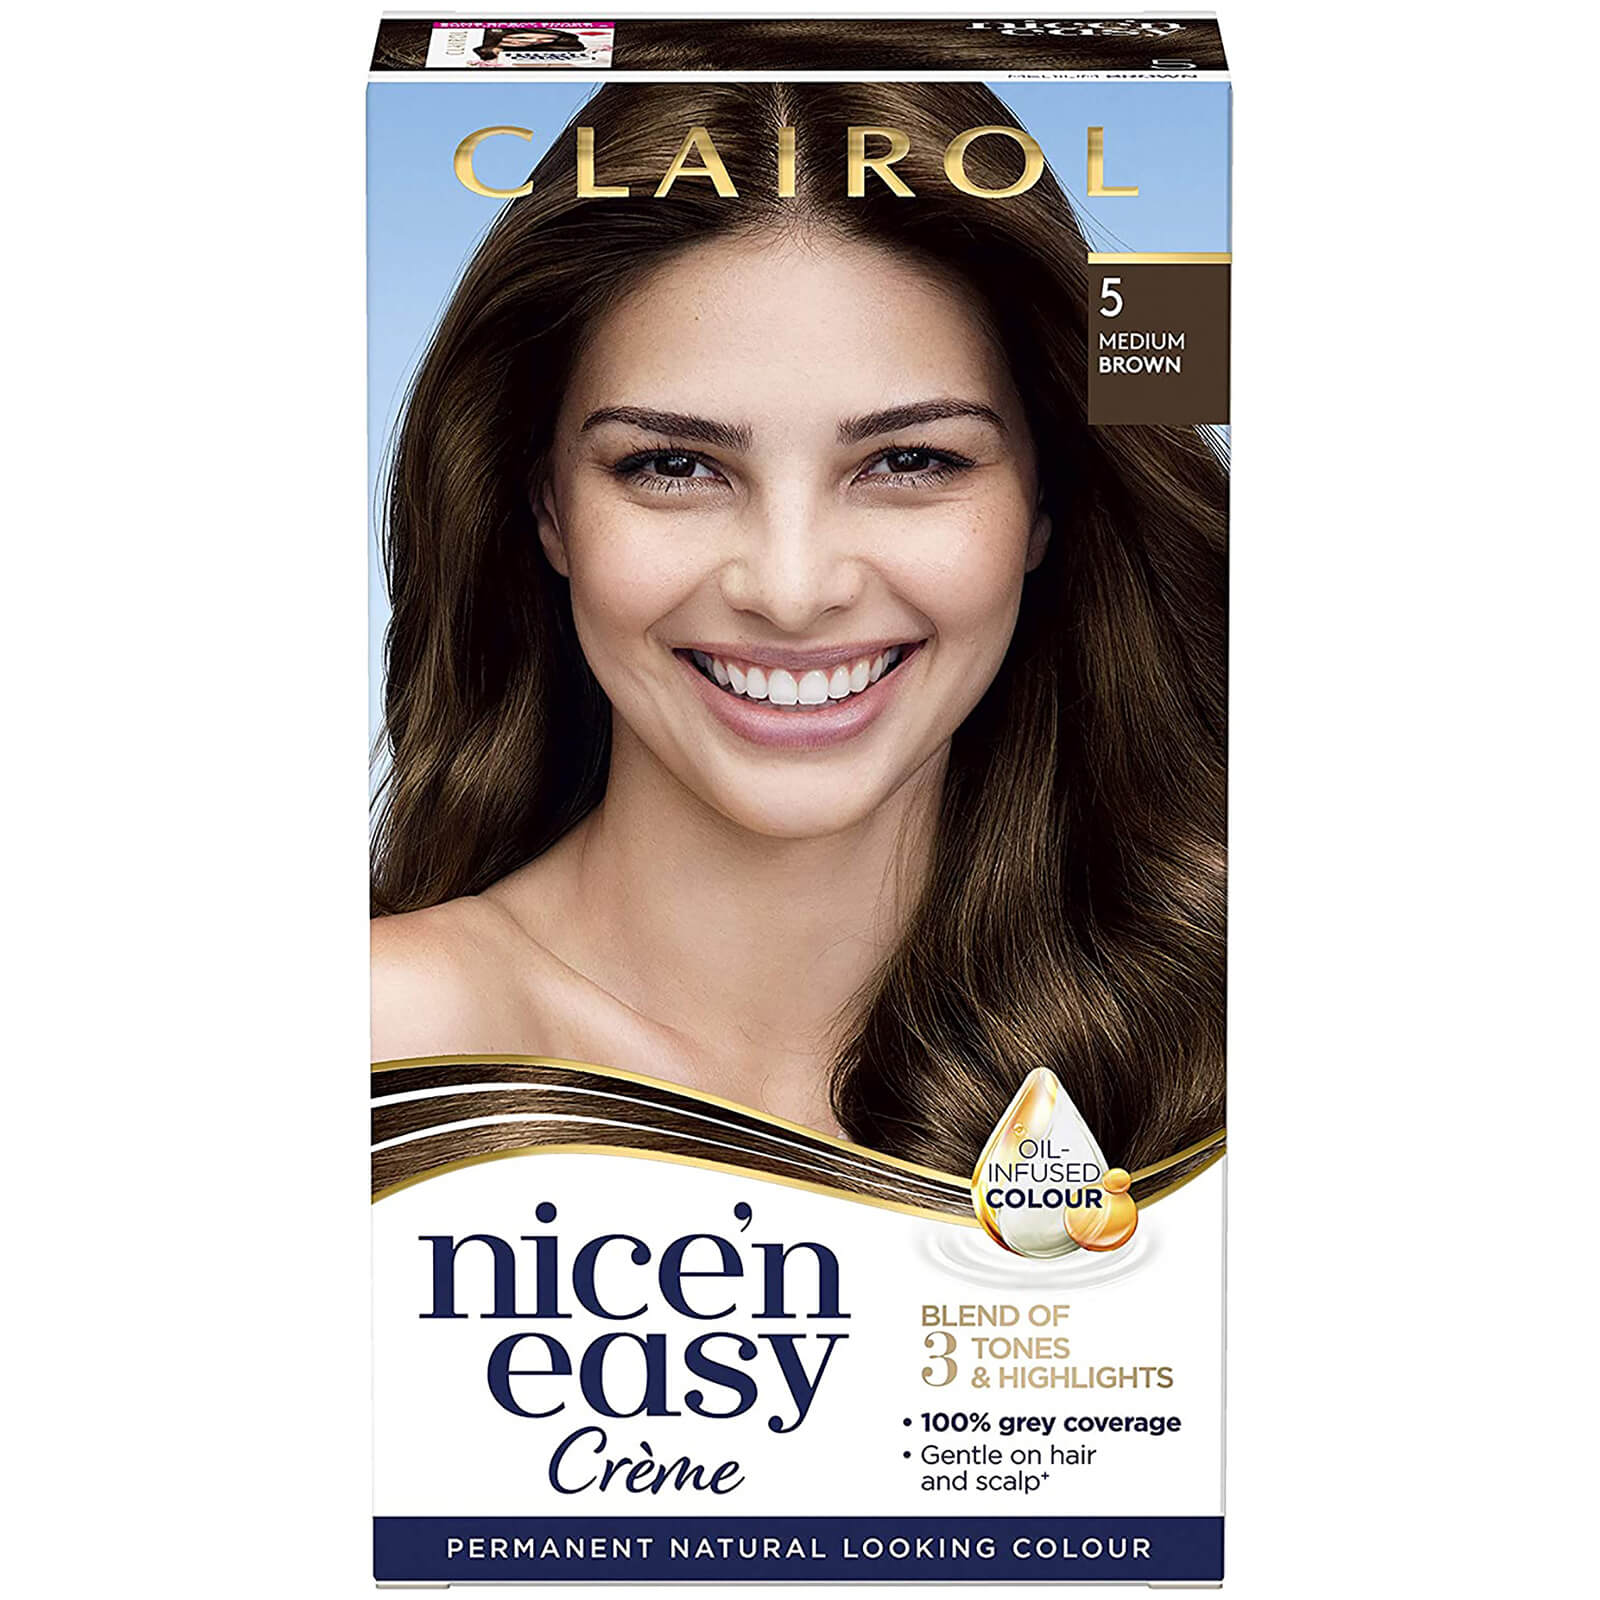 Clairol Nice' n Easy Crème Natural Looking Oil Infused Permanent Hair Dye 177ml (Various Shades) - 5 Medium Brown